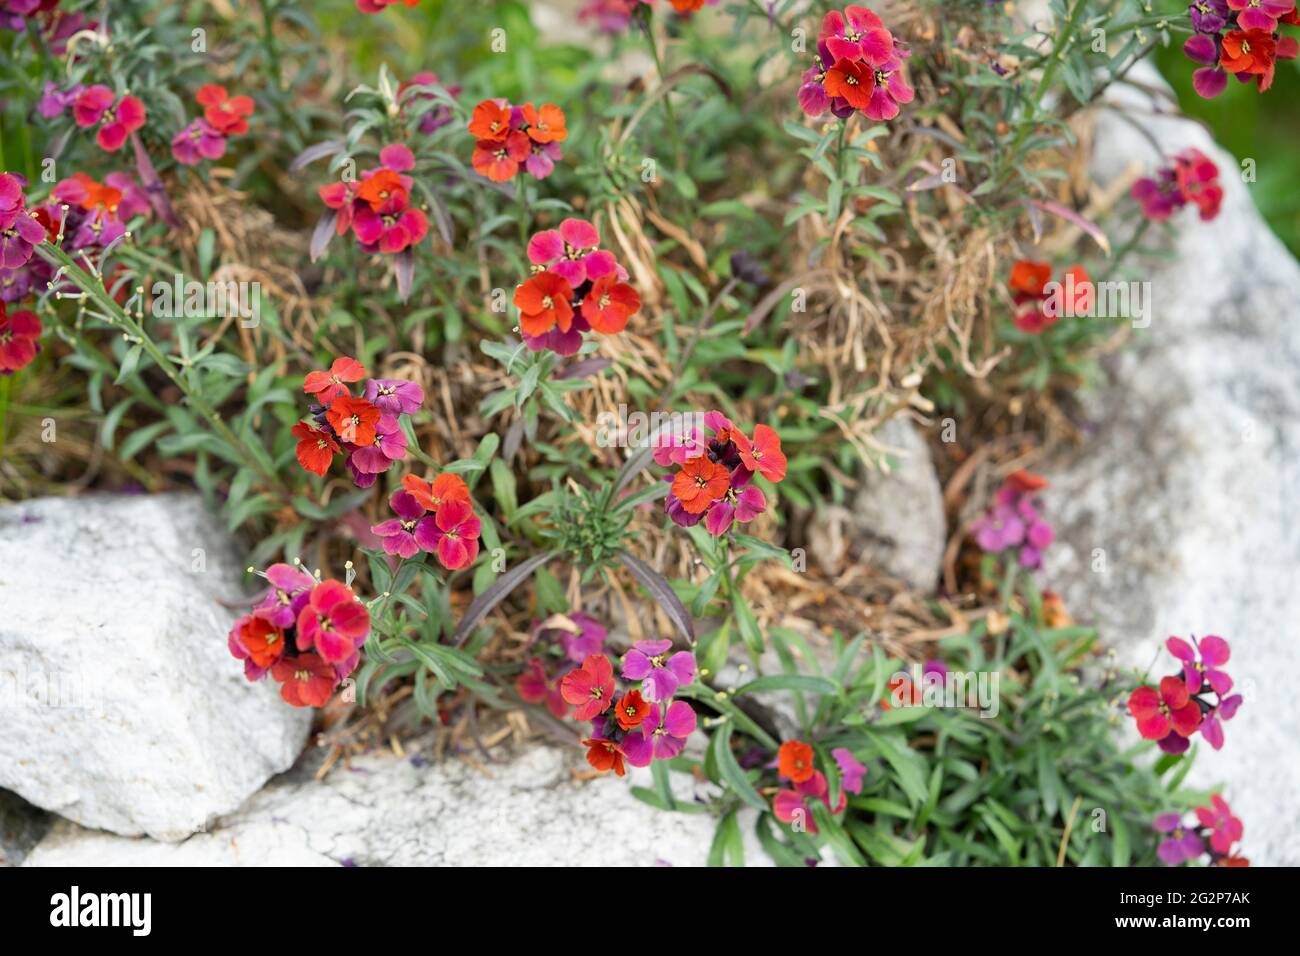 Erysimum (gebräuchlicher Name Wallflower) 'Red Jep' sind blühende Pflanzen aus der Familie der Brassicaceae mit dichten Trauben von 4 Blütenblättern. Österreich Stockfoto